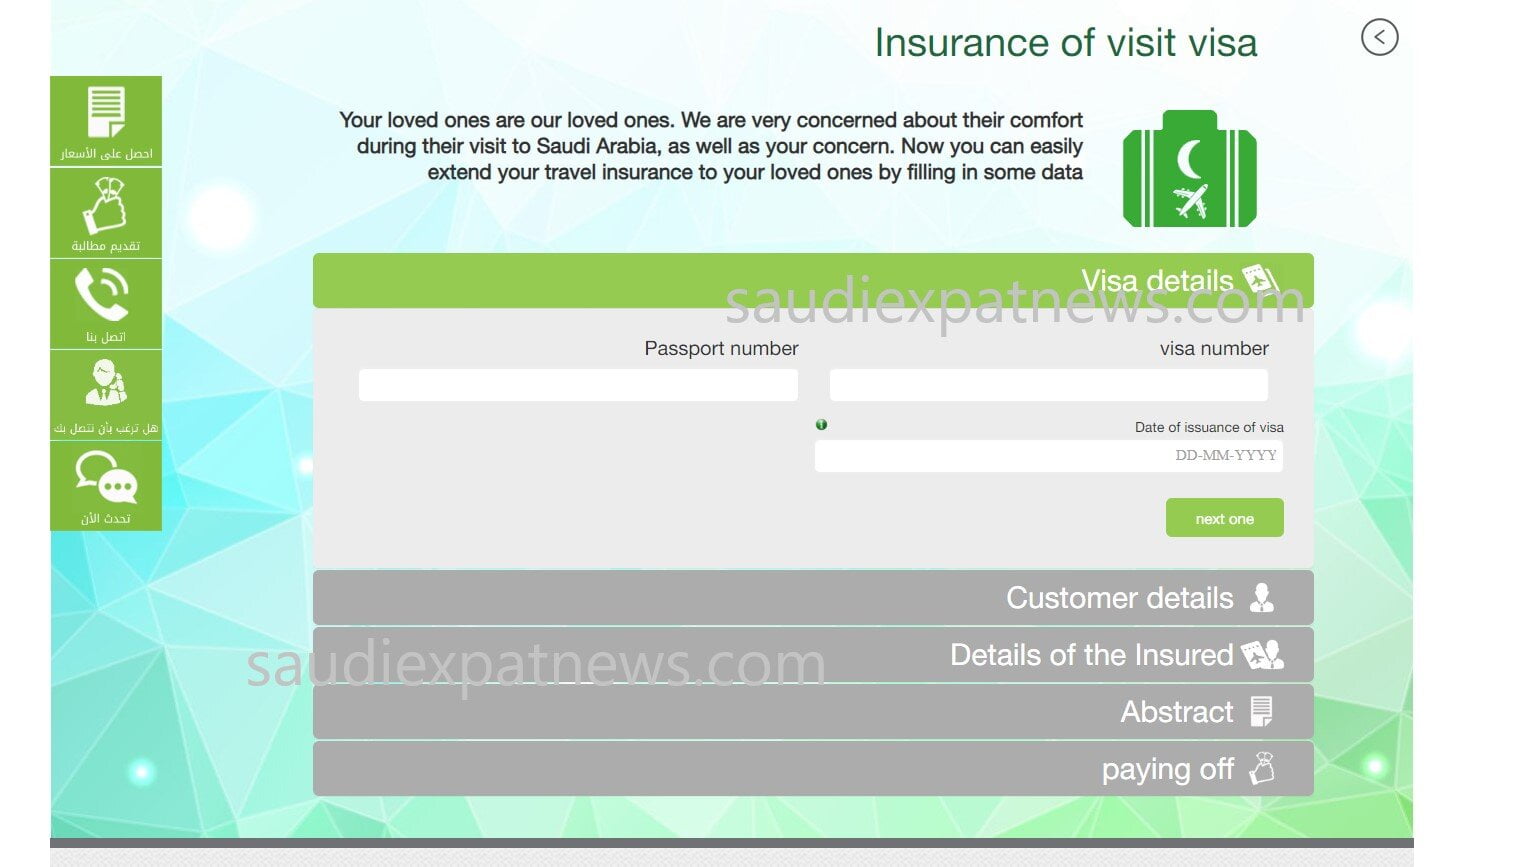 Saudi Visit Visa Insurance Renewal 2